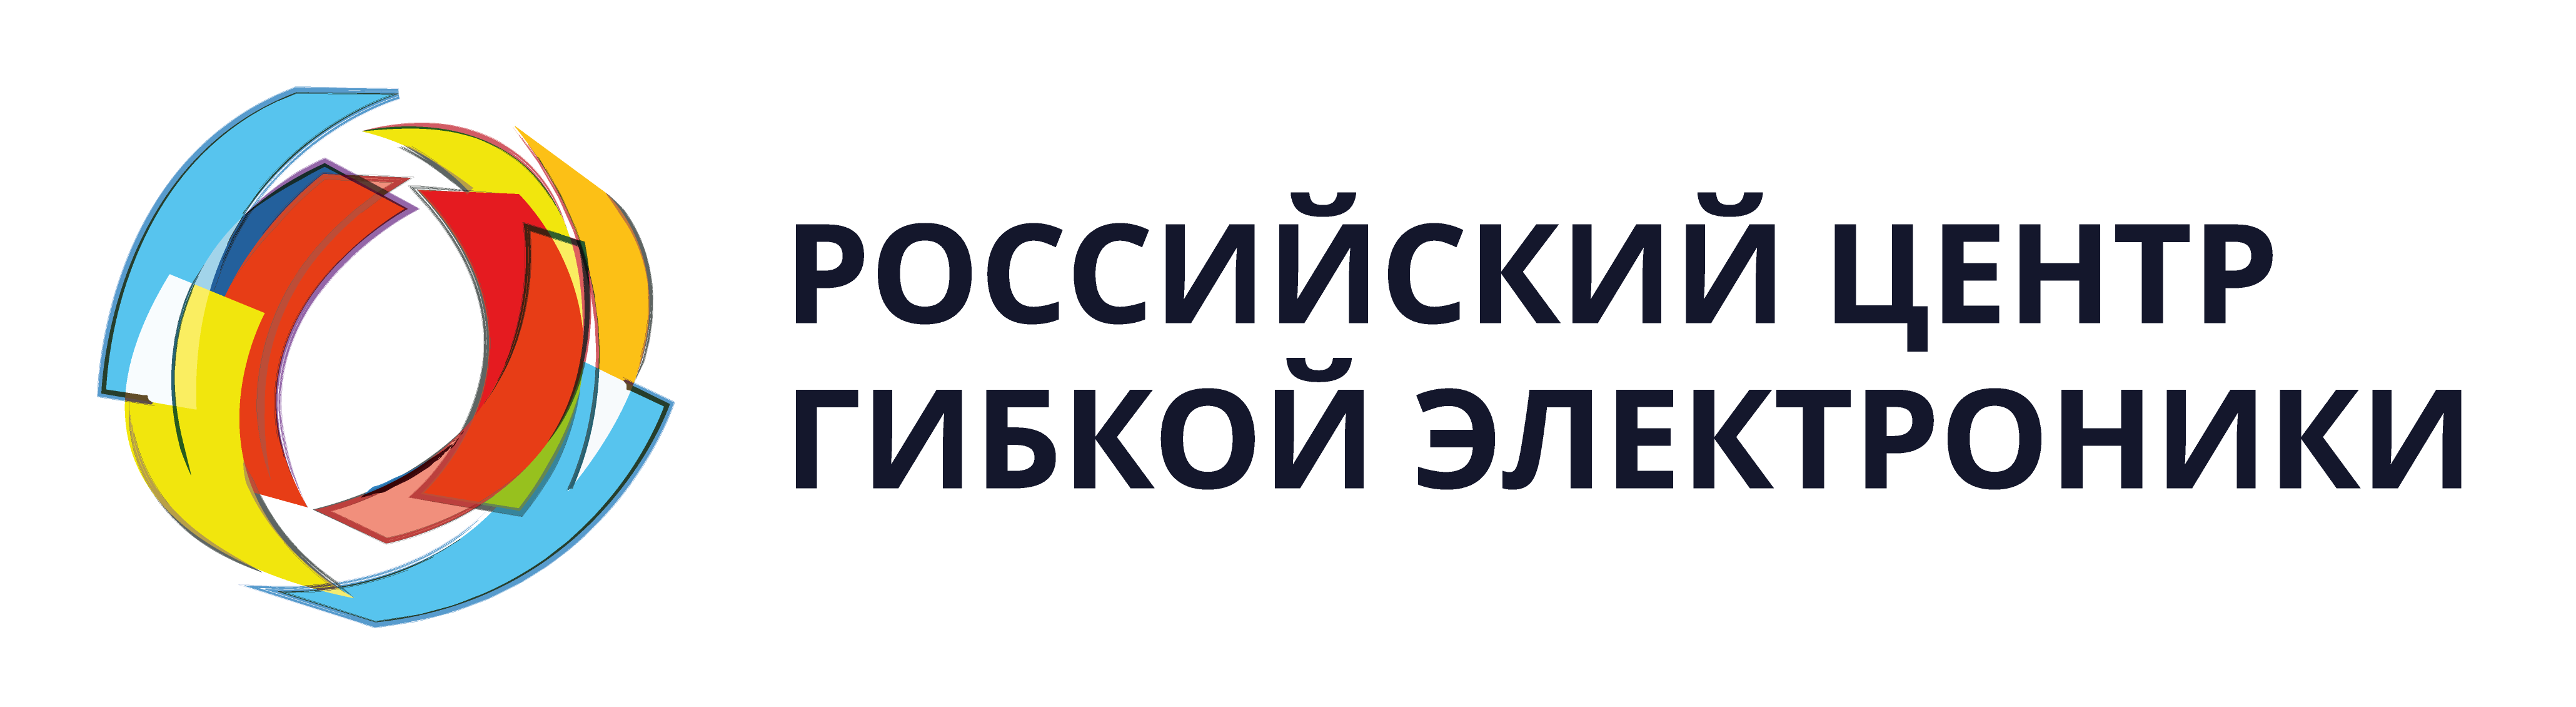 Российский центр гибкой электроники